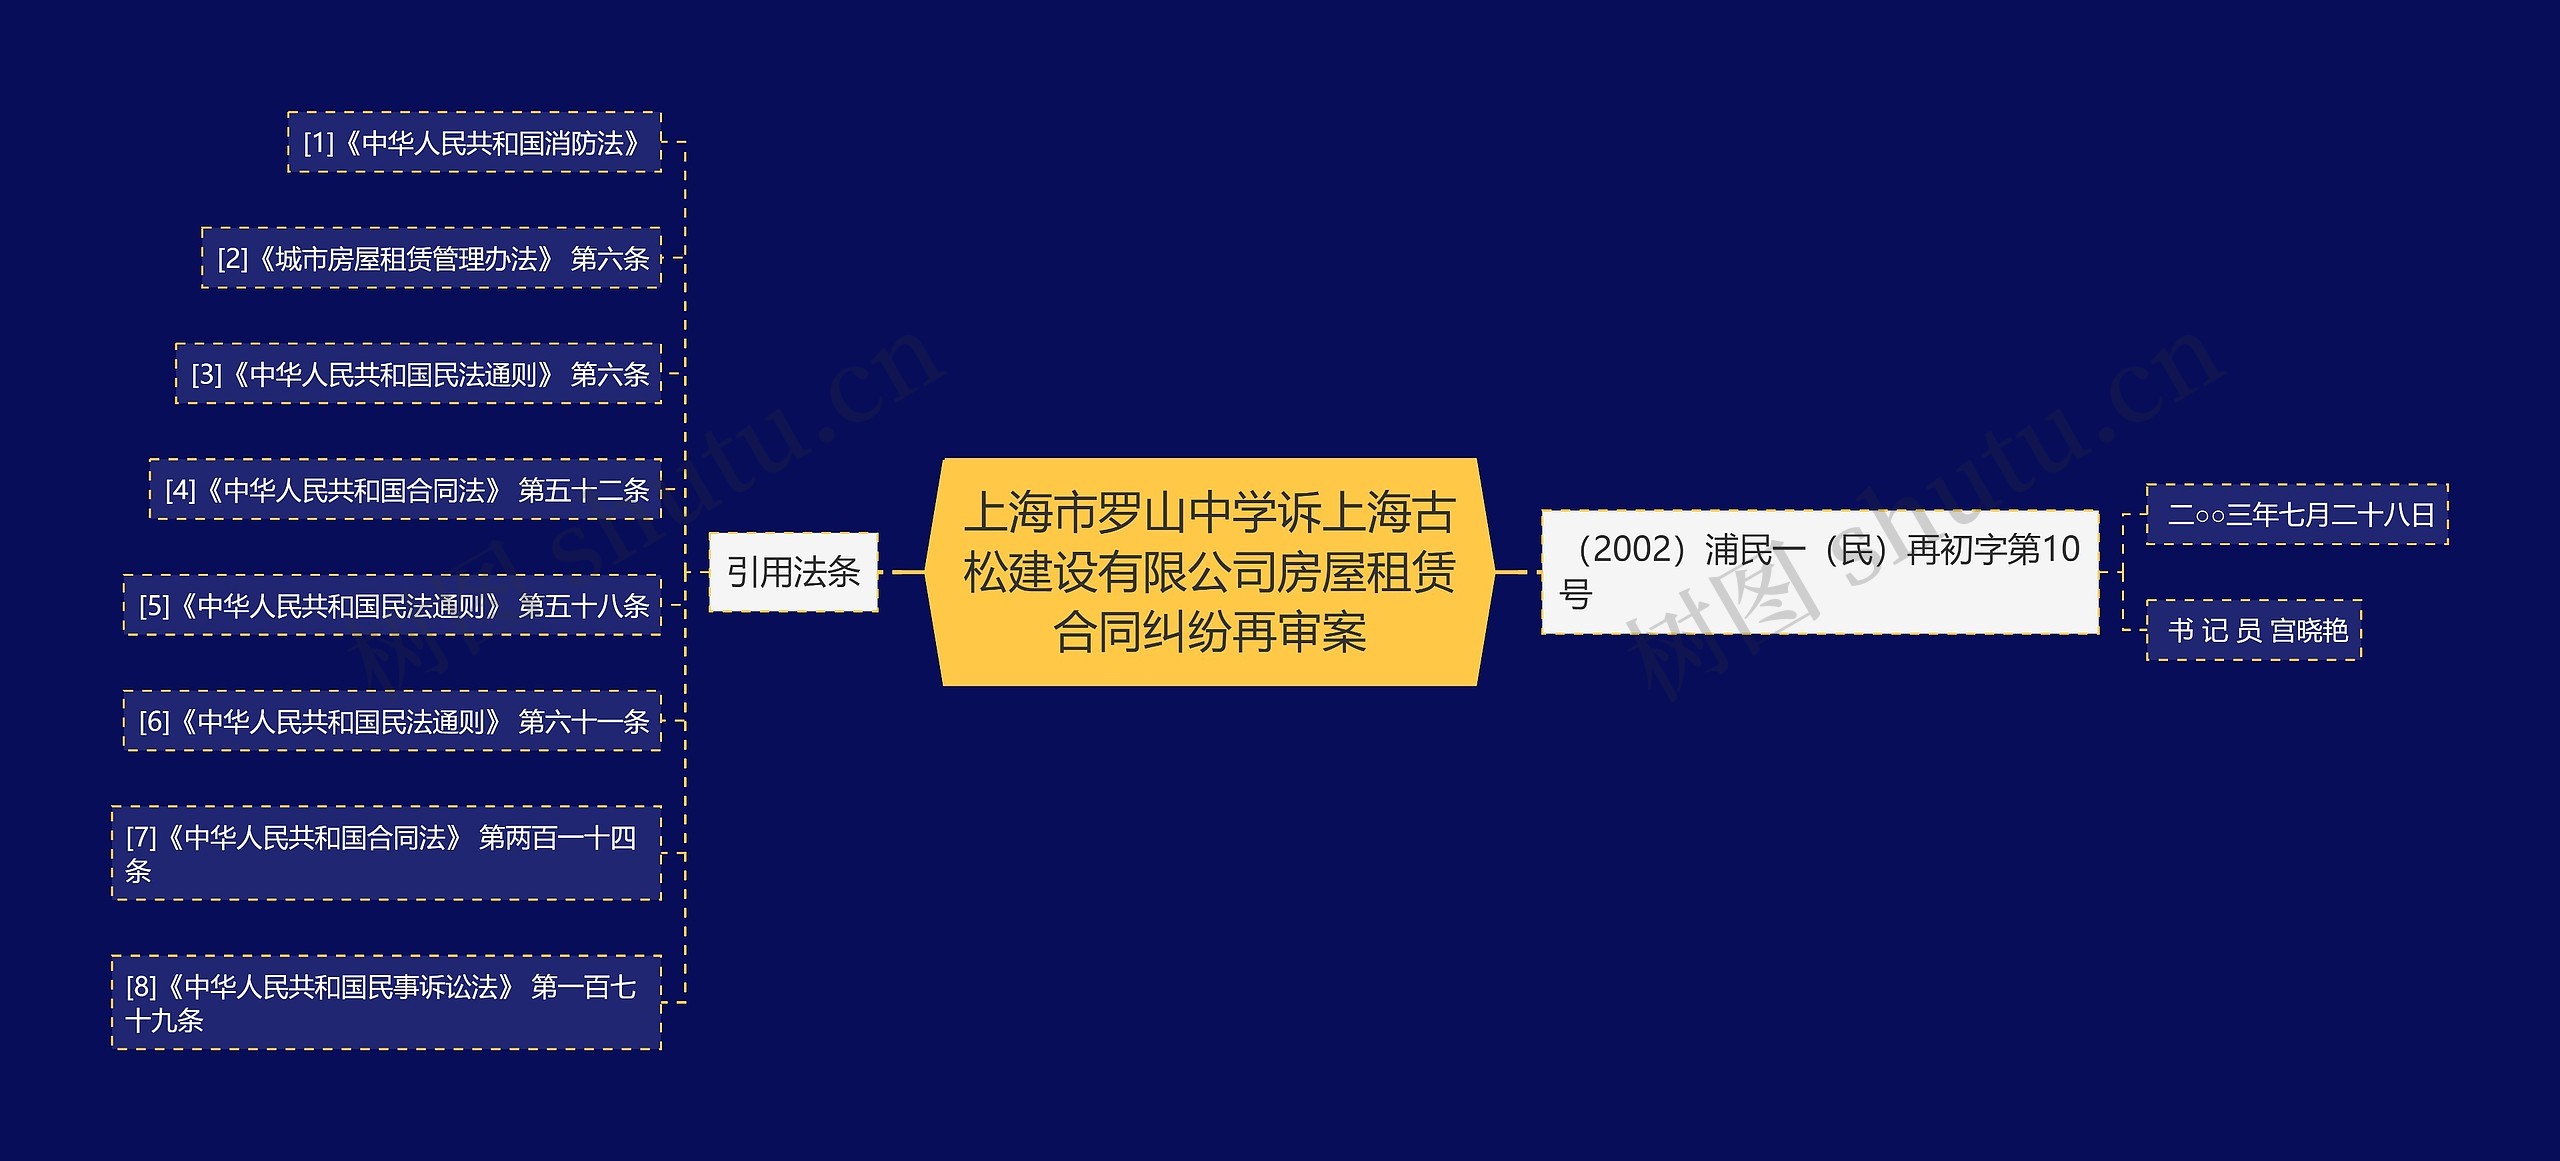 上海市罗山中学诉上海古松建设有限公司房屋租赁合同纠纷再审案